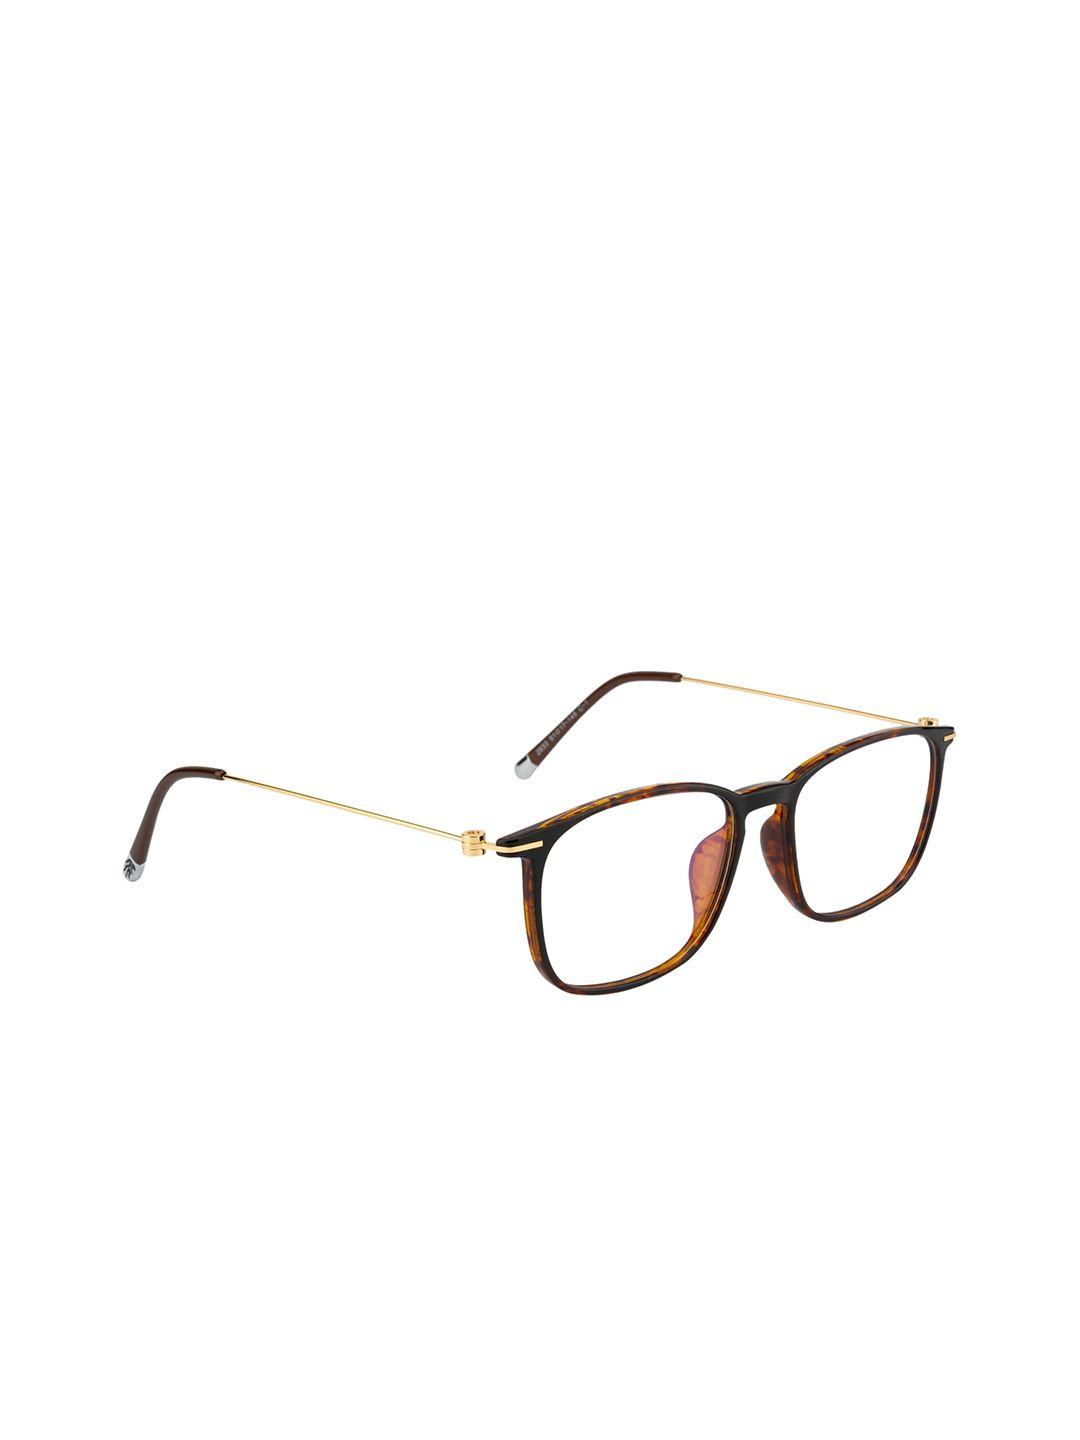 ted smith unisex brown & gold-toned full rim wayfarer frames eyeglasses